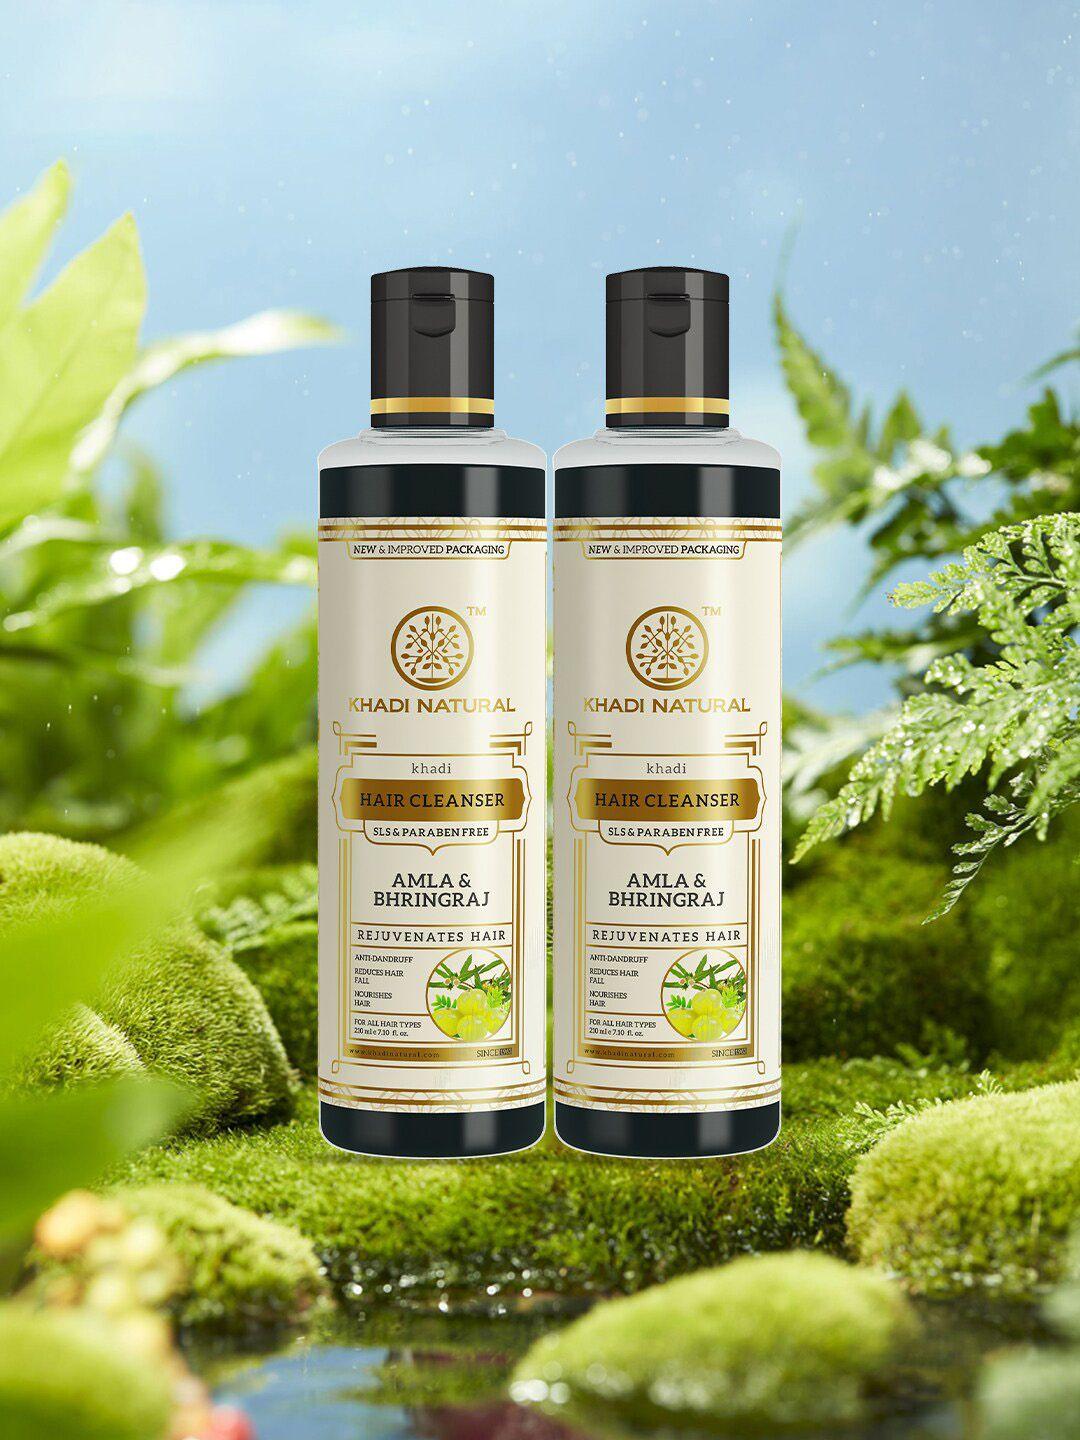 khadi natural set of 2 amla & bhringraj hair cleanser with reetha - 210 ml each